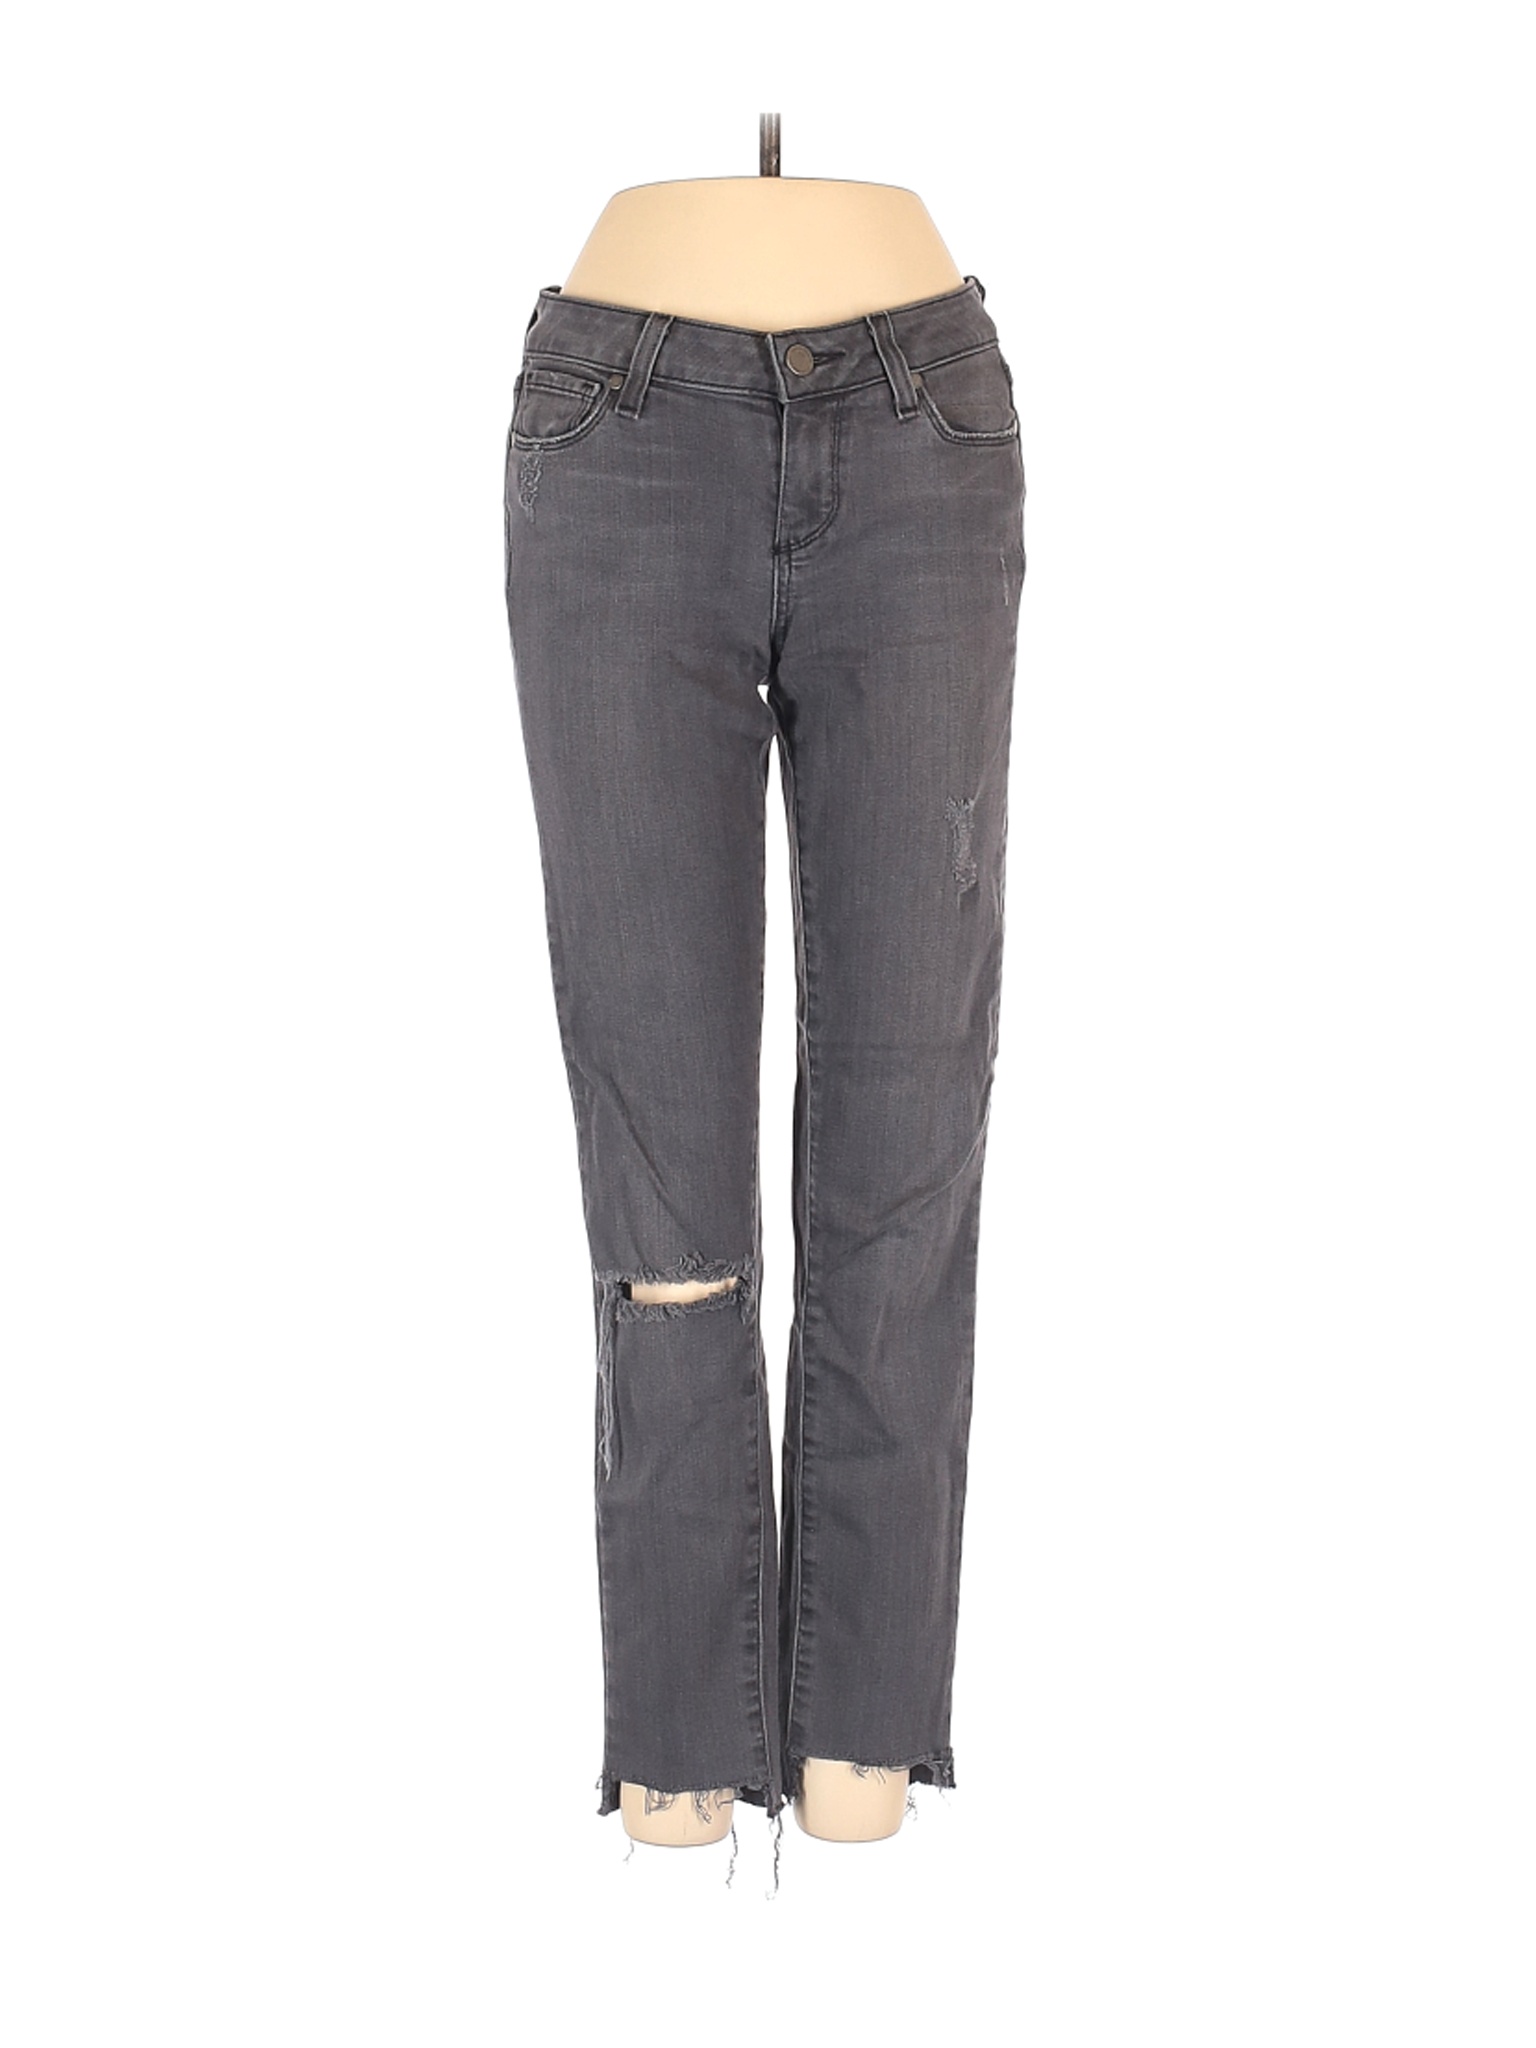 Paige Women Gray Jeans 25W | eBay